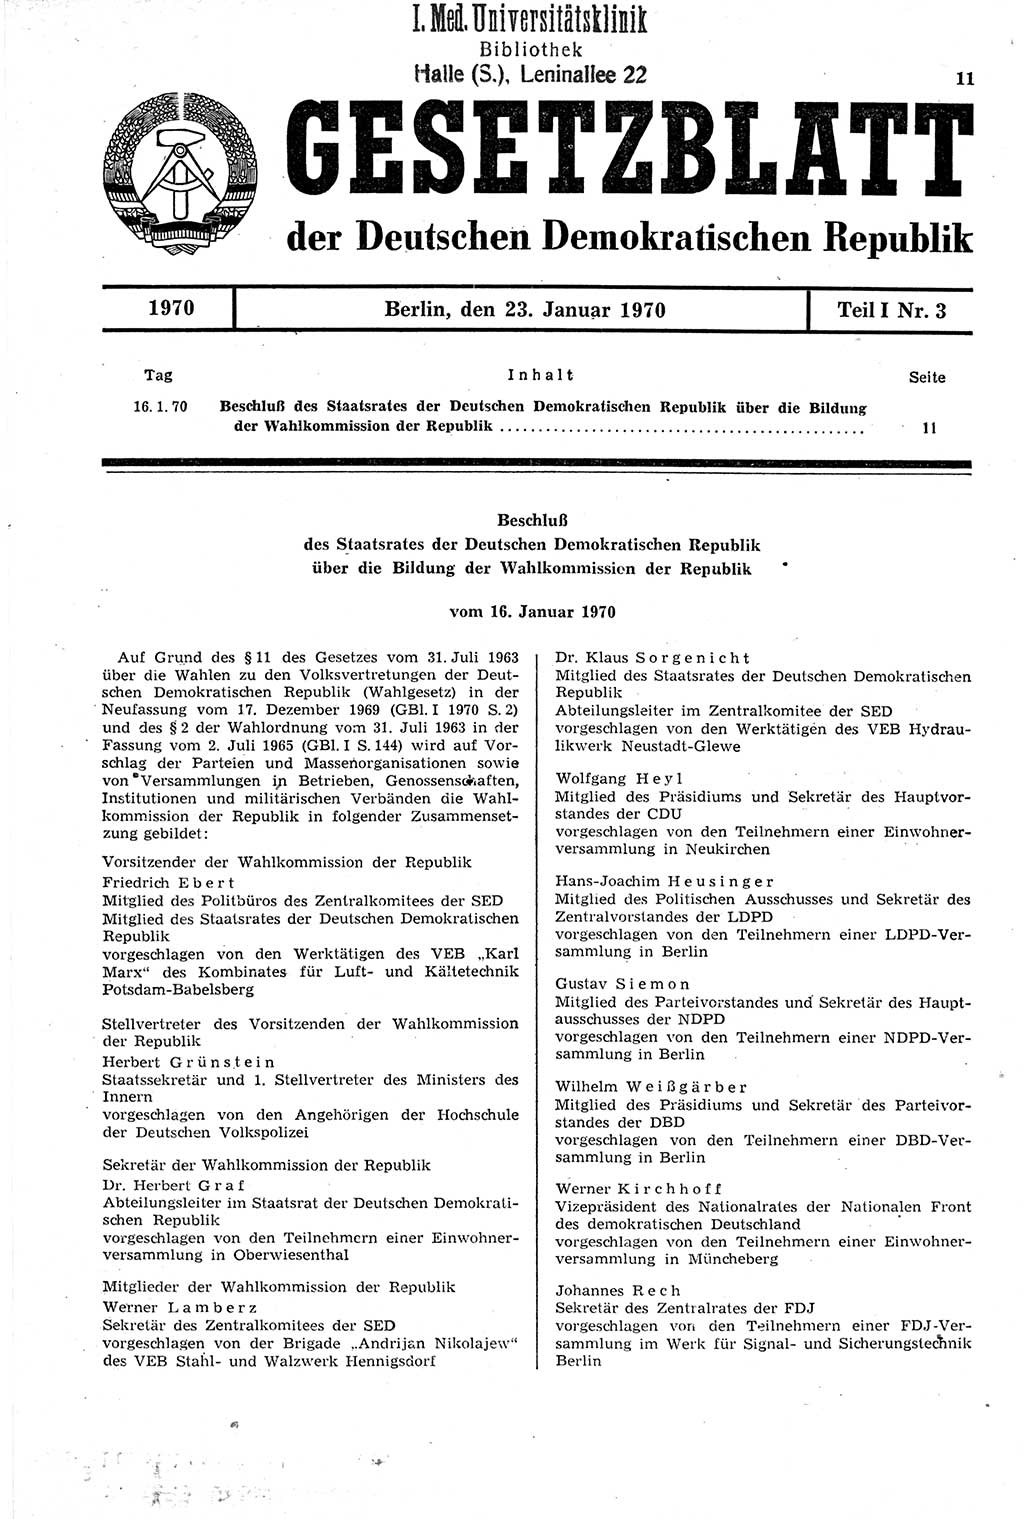 Gesetzblatt (GBl.) der Deutschen Demokratischen Republik (DDR) Teil Ⅰ 1970, Seite 11 (GBl. DDR Ⅰ 1970, S. 11)